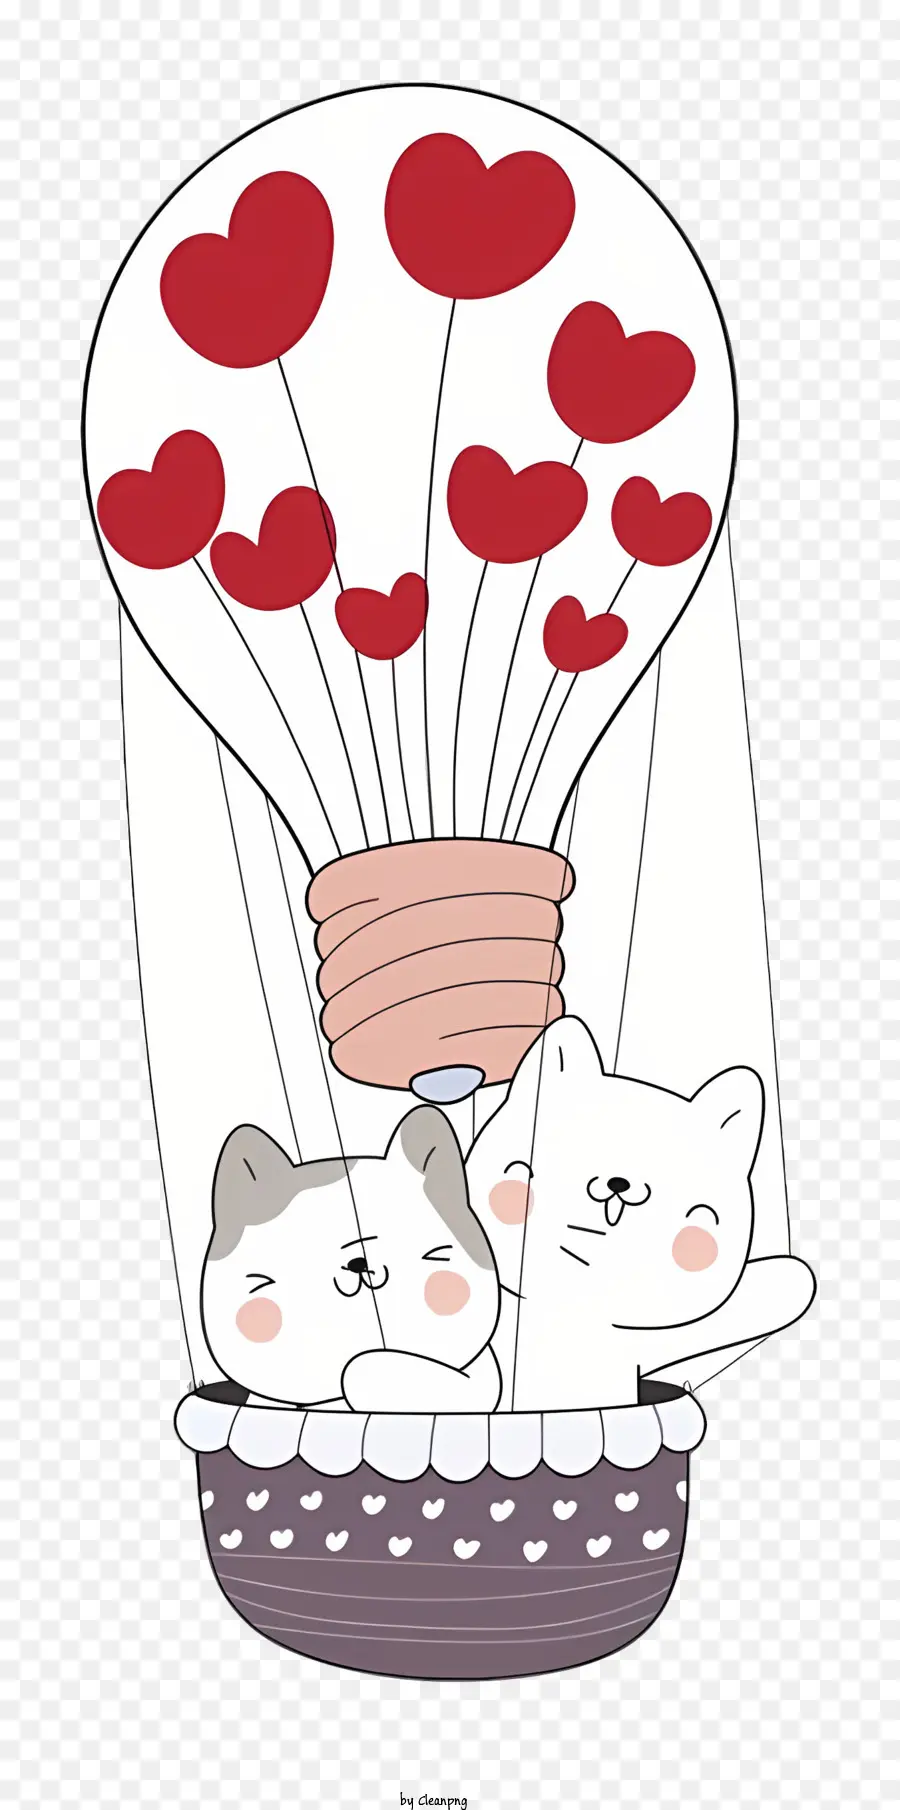 khinh khí cầu - Hai con mèo trong khinh khí cầu được bao quanh bởi trái tim